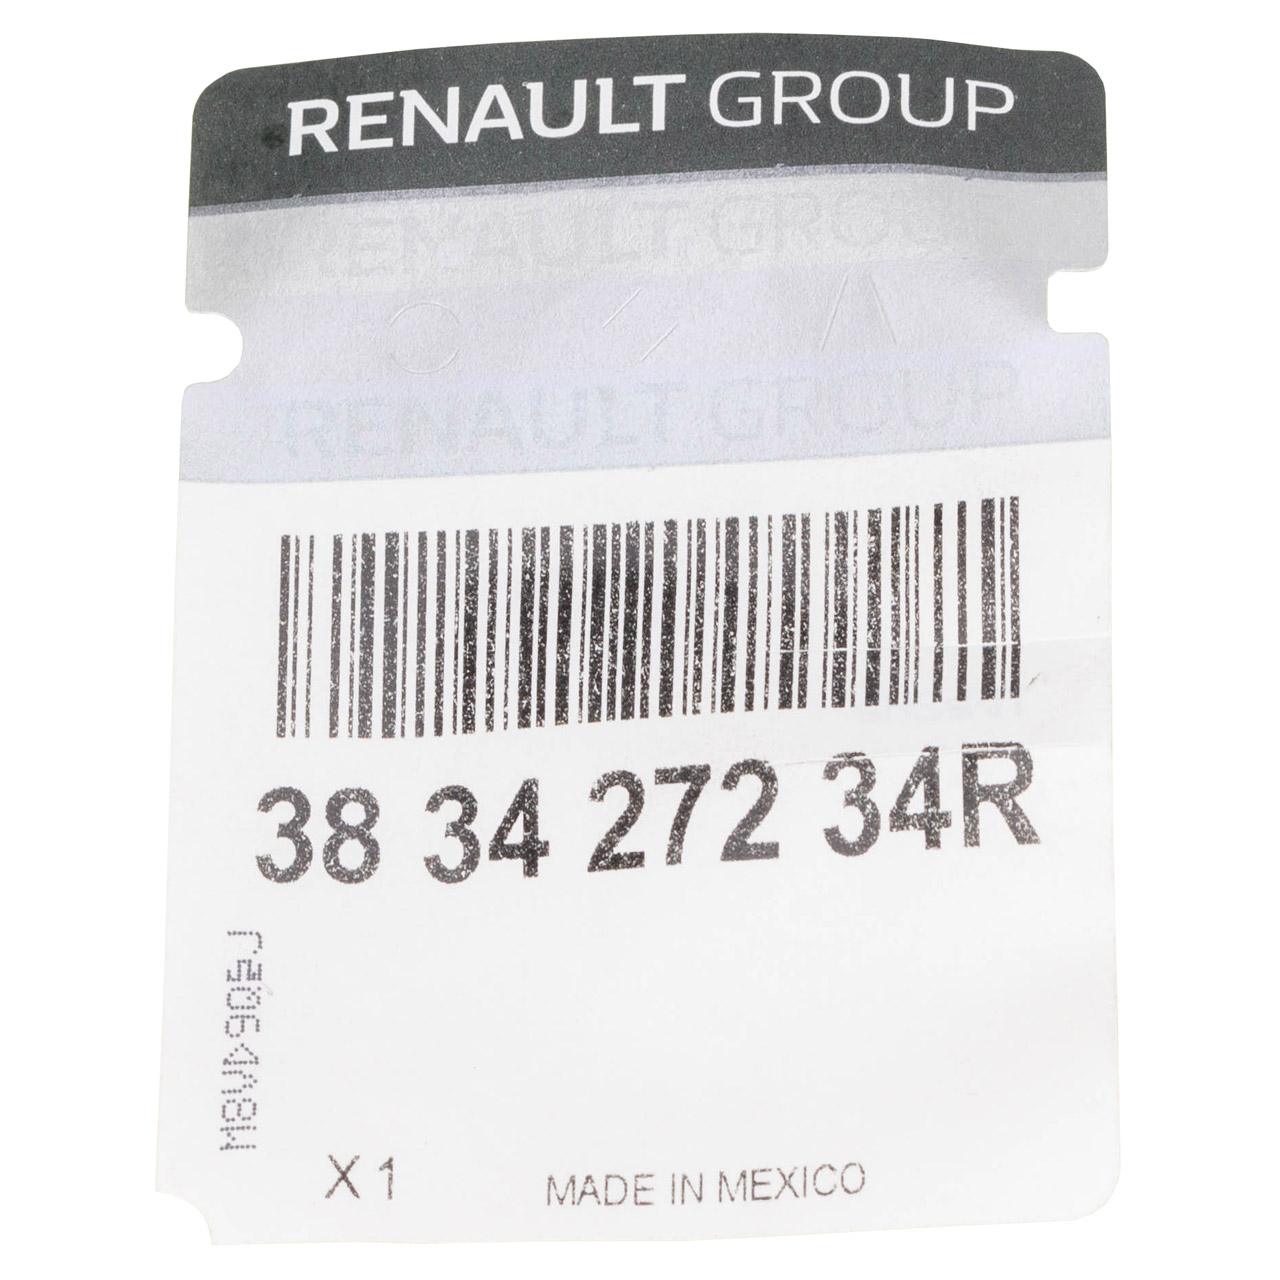 ORIGINAL Renault Wellendichtring Simmering Differential Megane 4 Twingo 3 Clio 383427234R